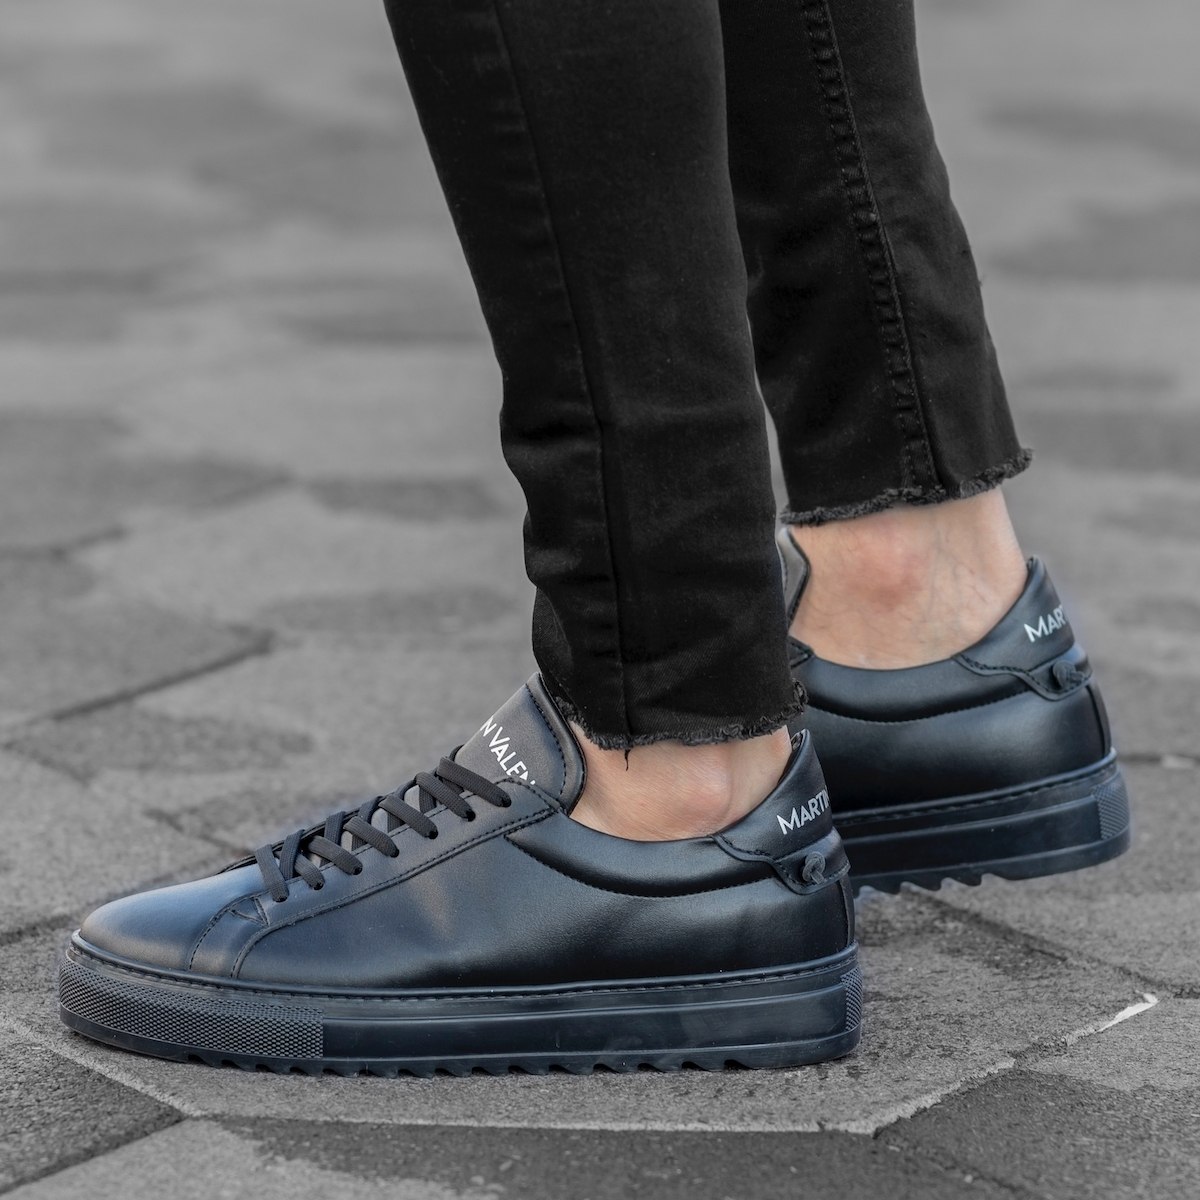 Herren Low Top Sneakers Schuhe in schwarz | Martin Valen